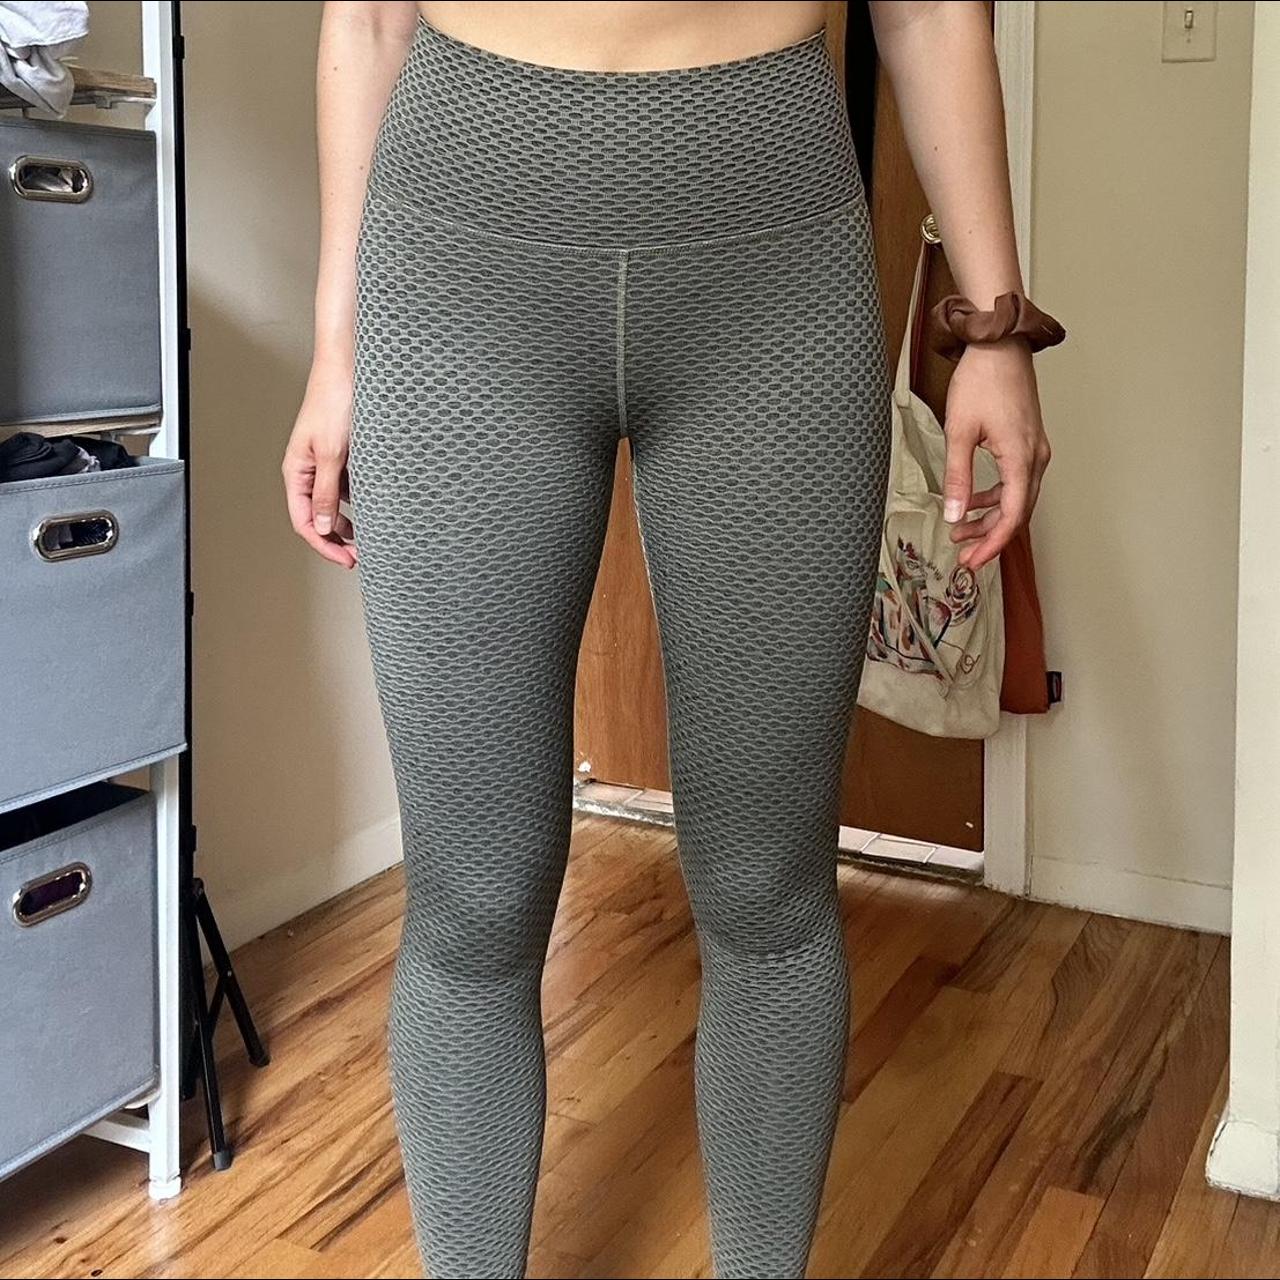 ECHT grey workout leggings with butt scrunch - Depop